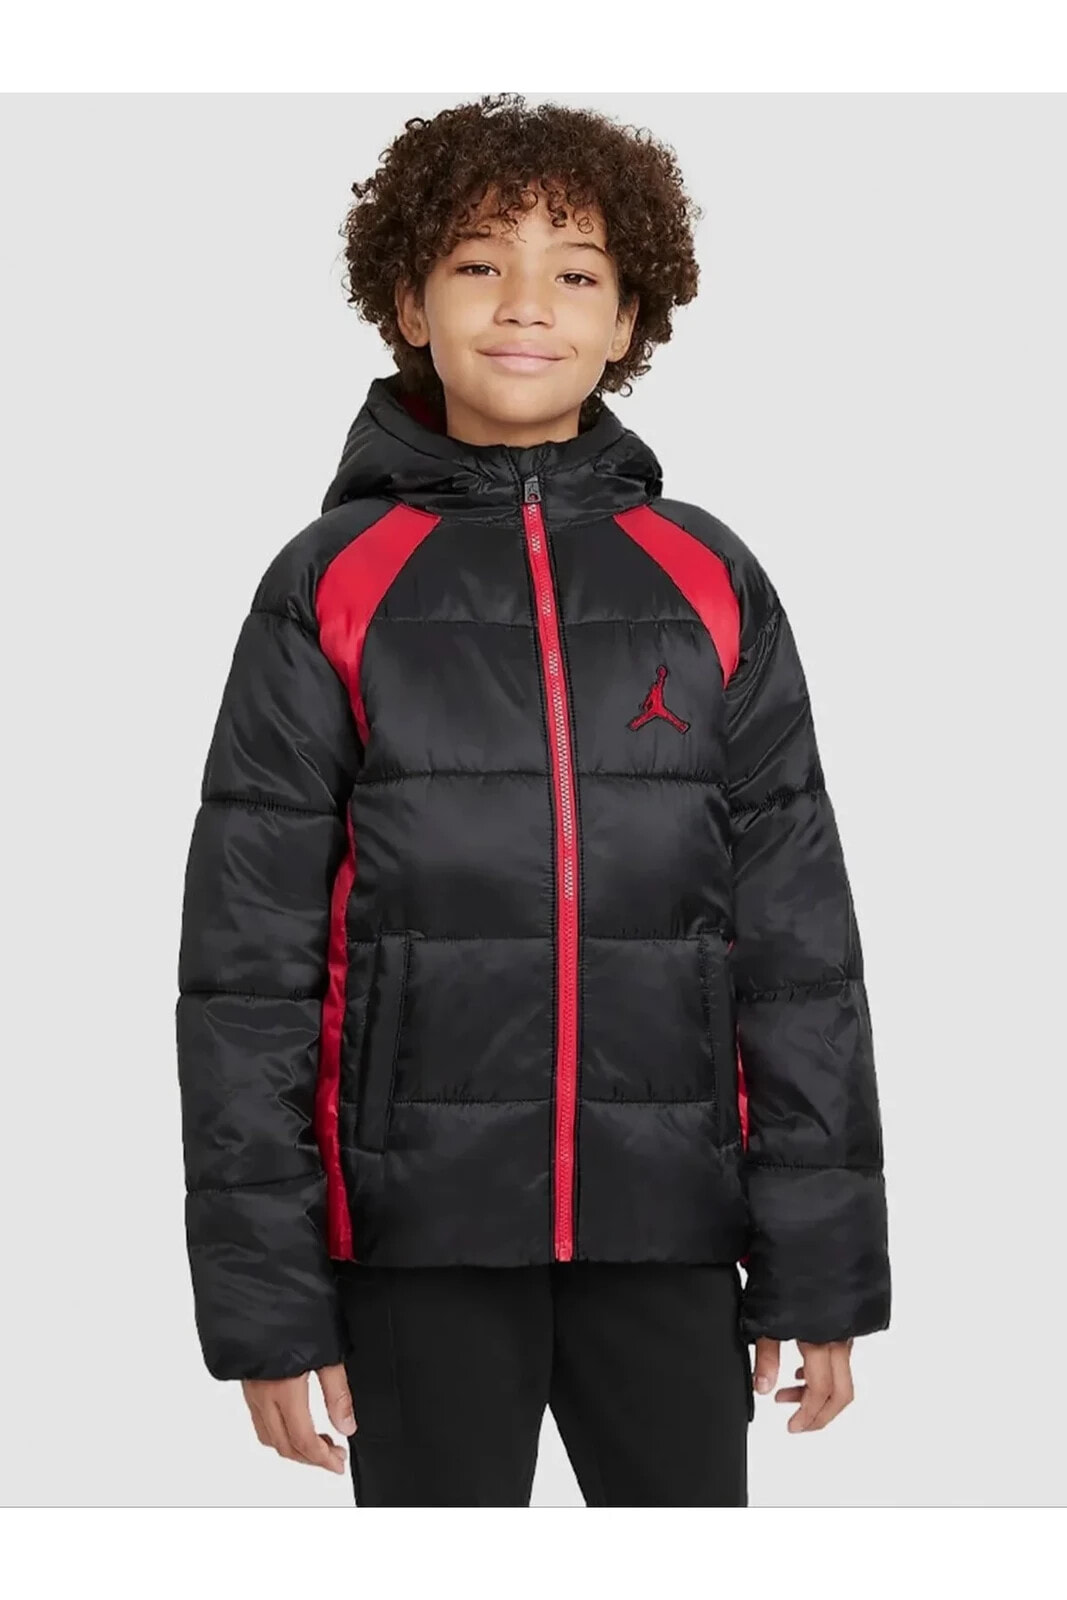 Jordan Puffer Jacket Black/ Red Çocuk Mont 95A636-023